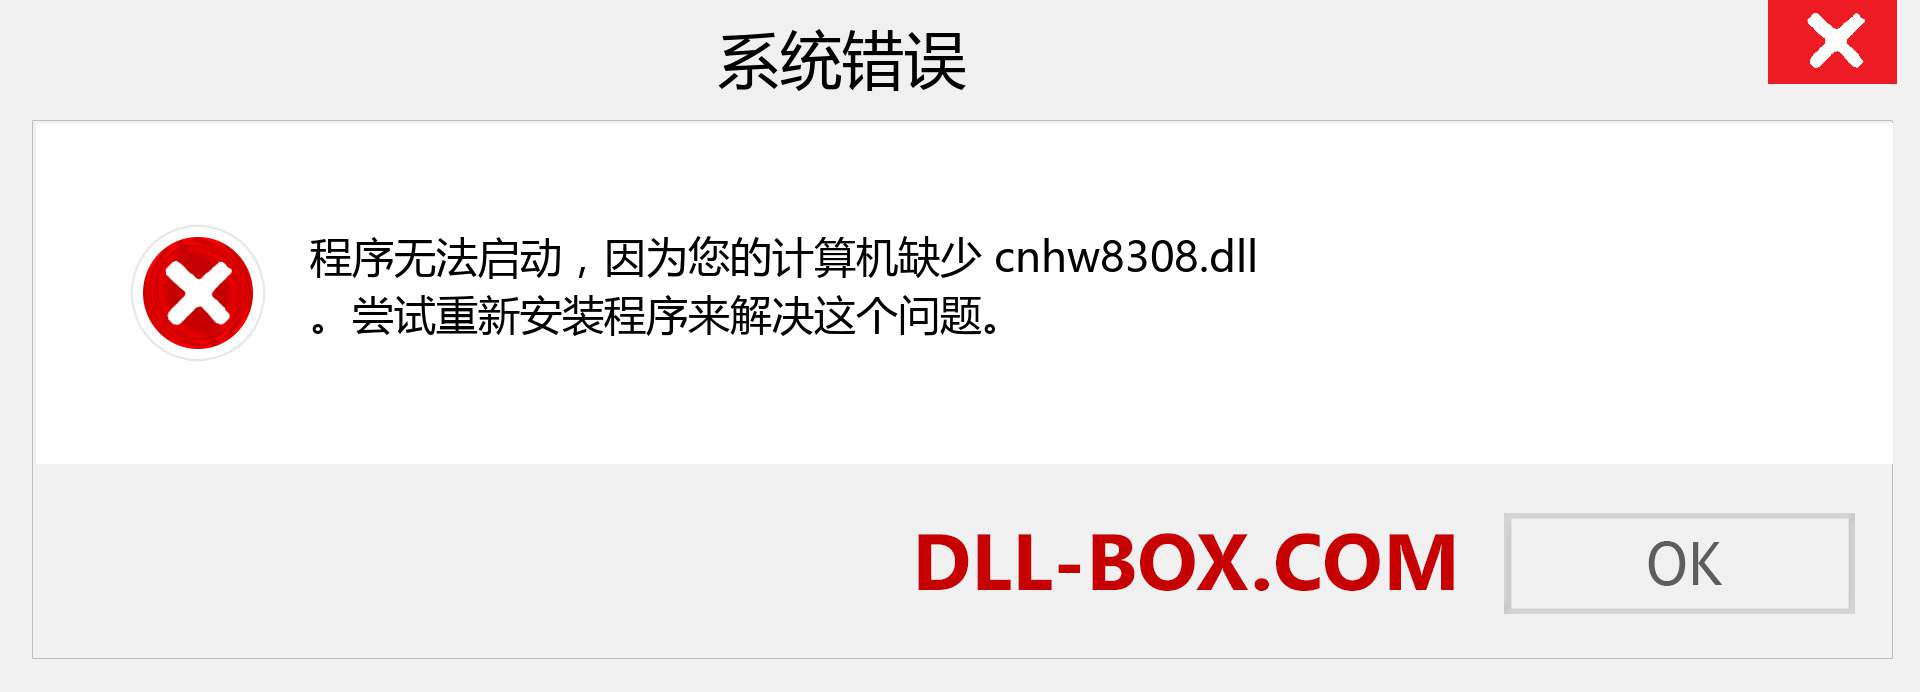 cnhw8308.dll 文件丢失？。 适用于 Windows 7、8、10 的下载 - 修复 Windows、照片、图像上的 cnhw8308 dll 丢失错误